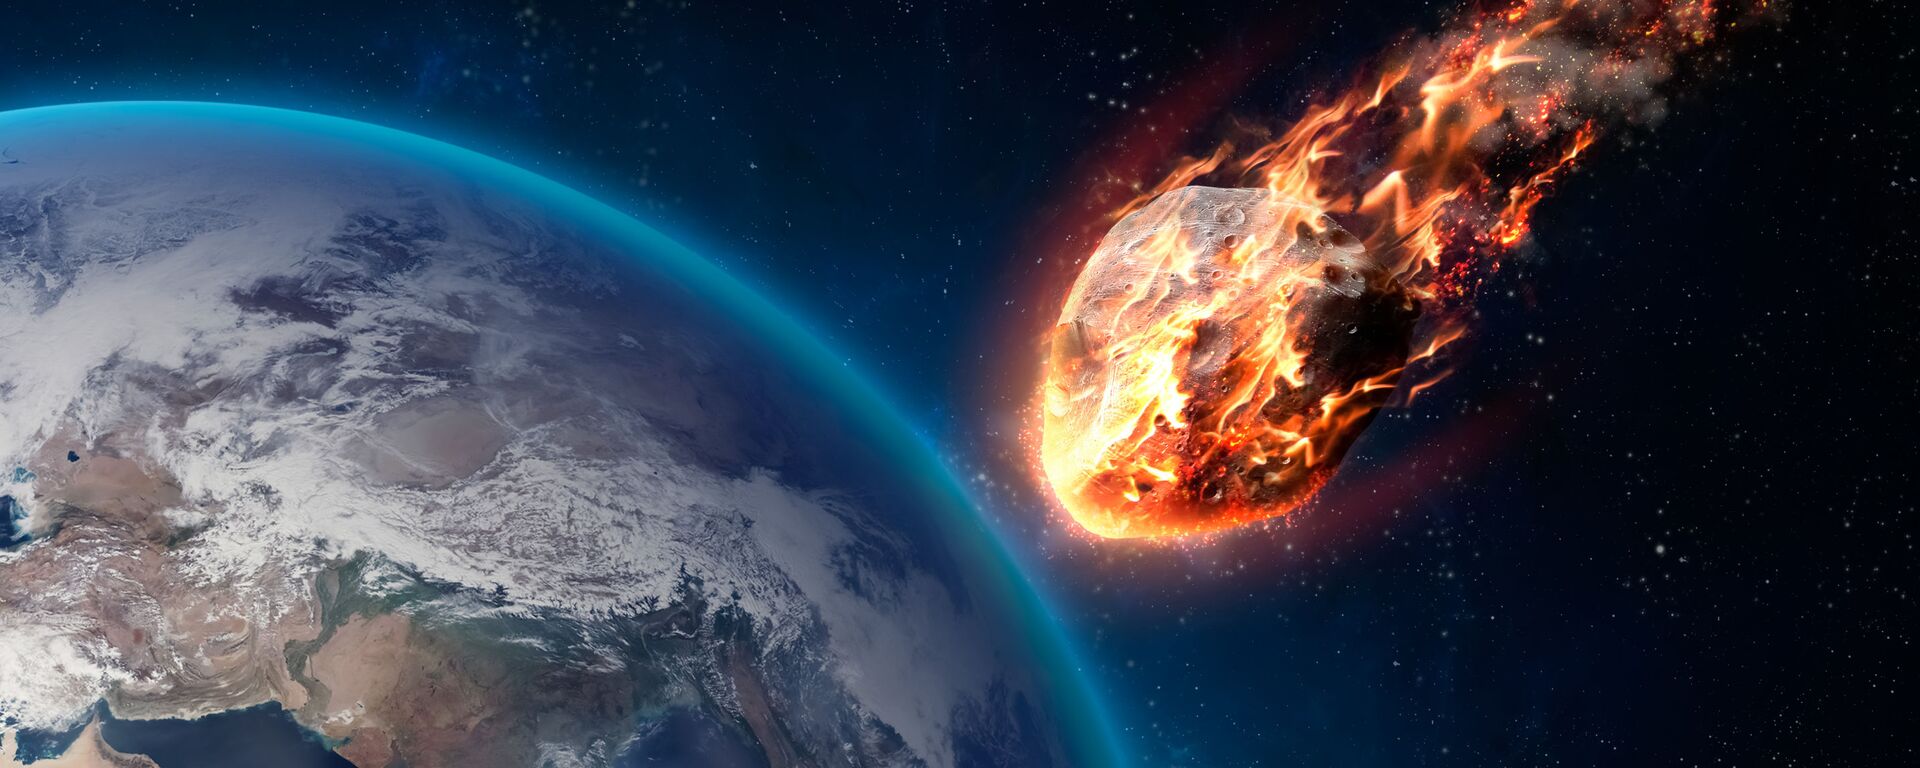 Горящий метеор во время входа в атмосферу Земли - Sputnik Ўзбекистон, 1920, 05.03.2021